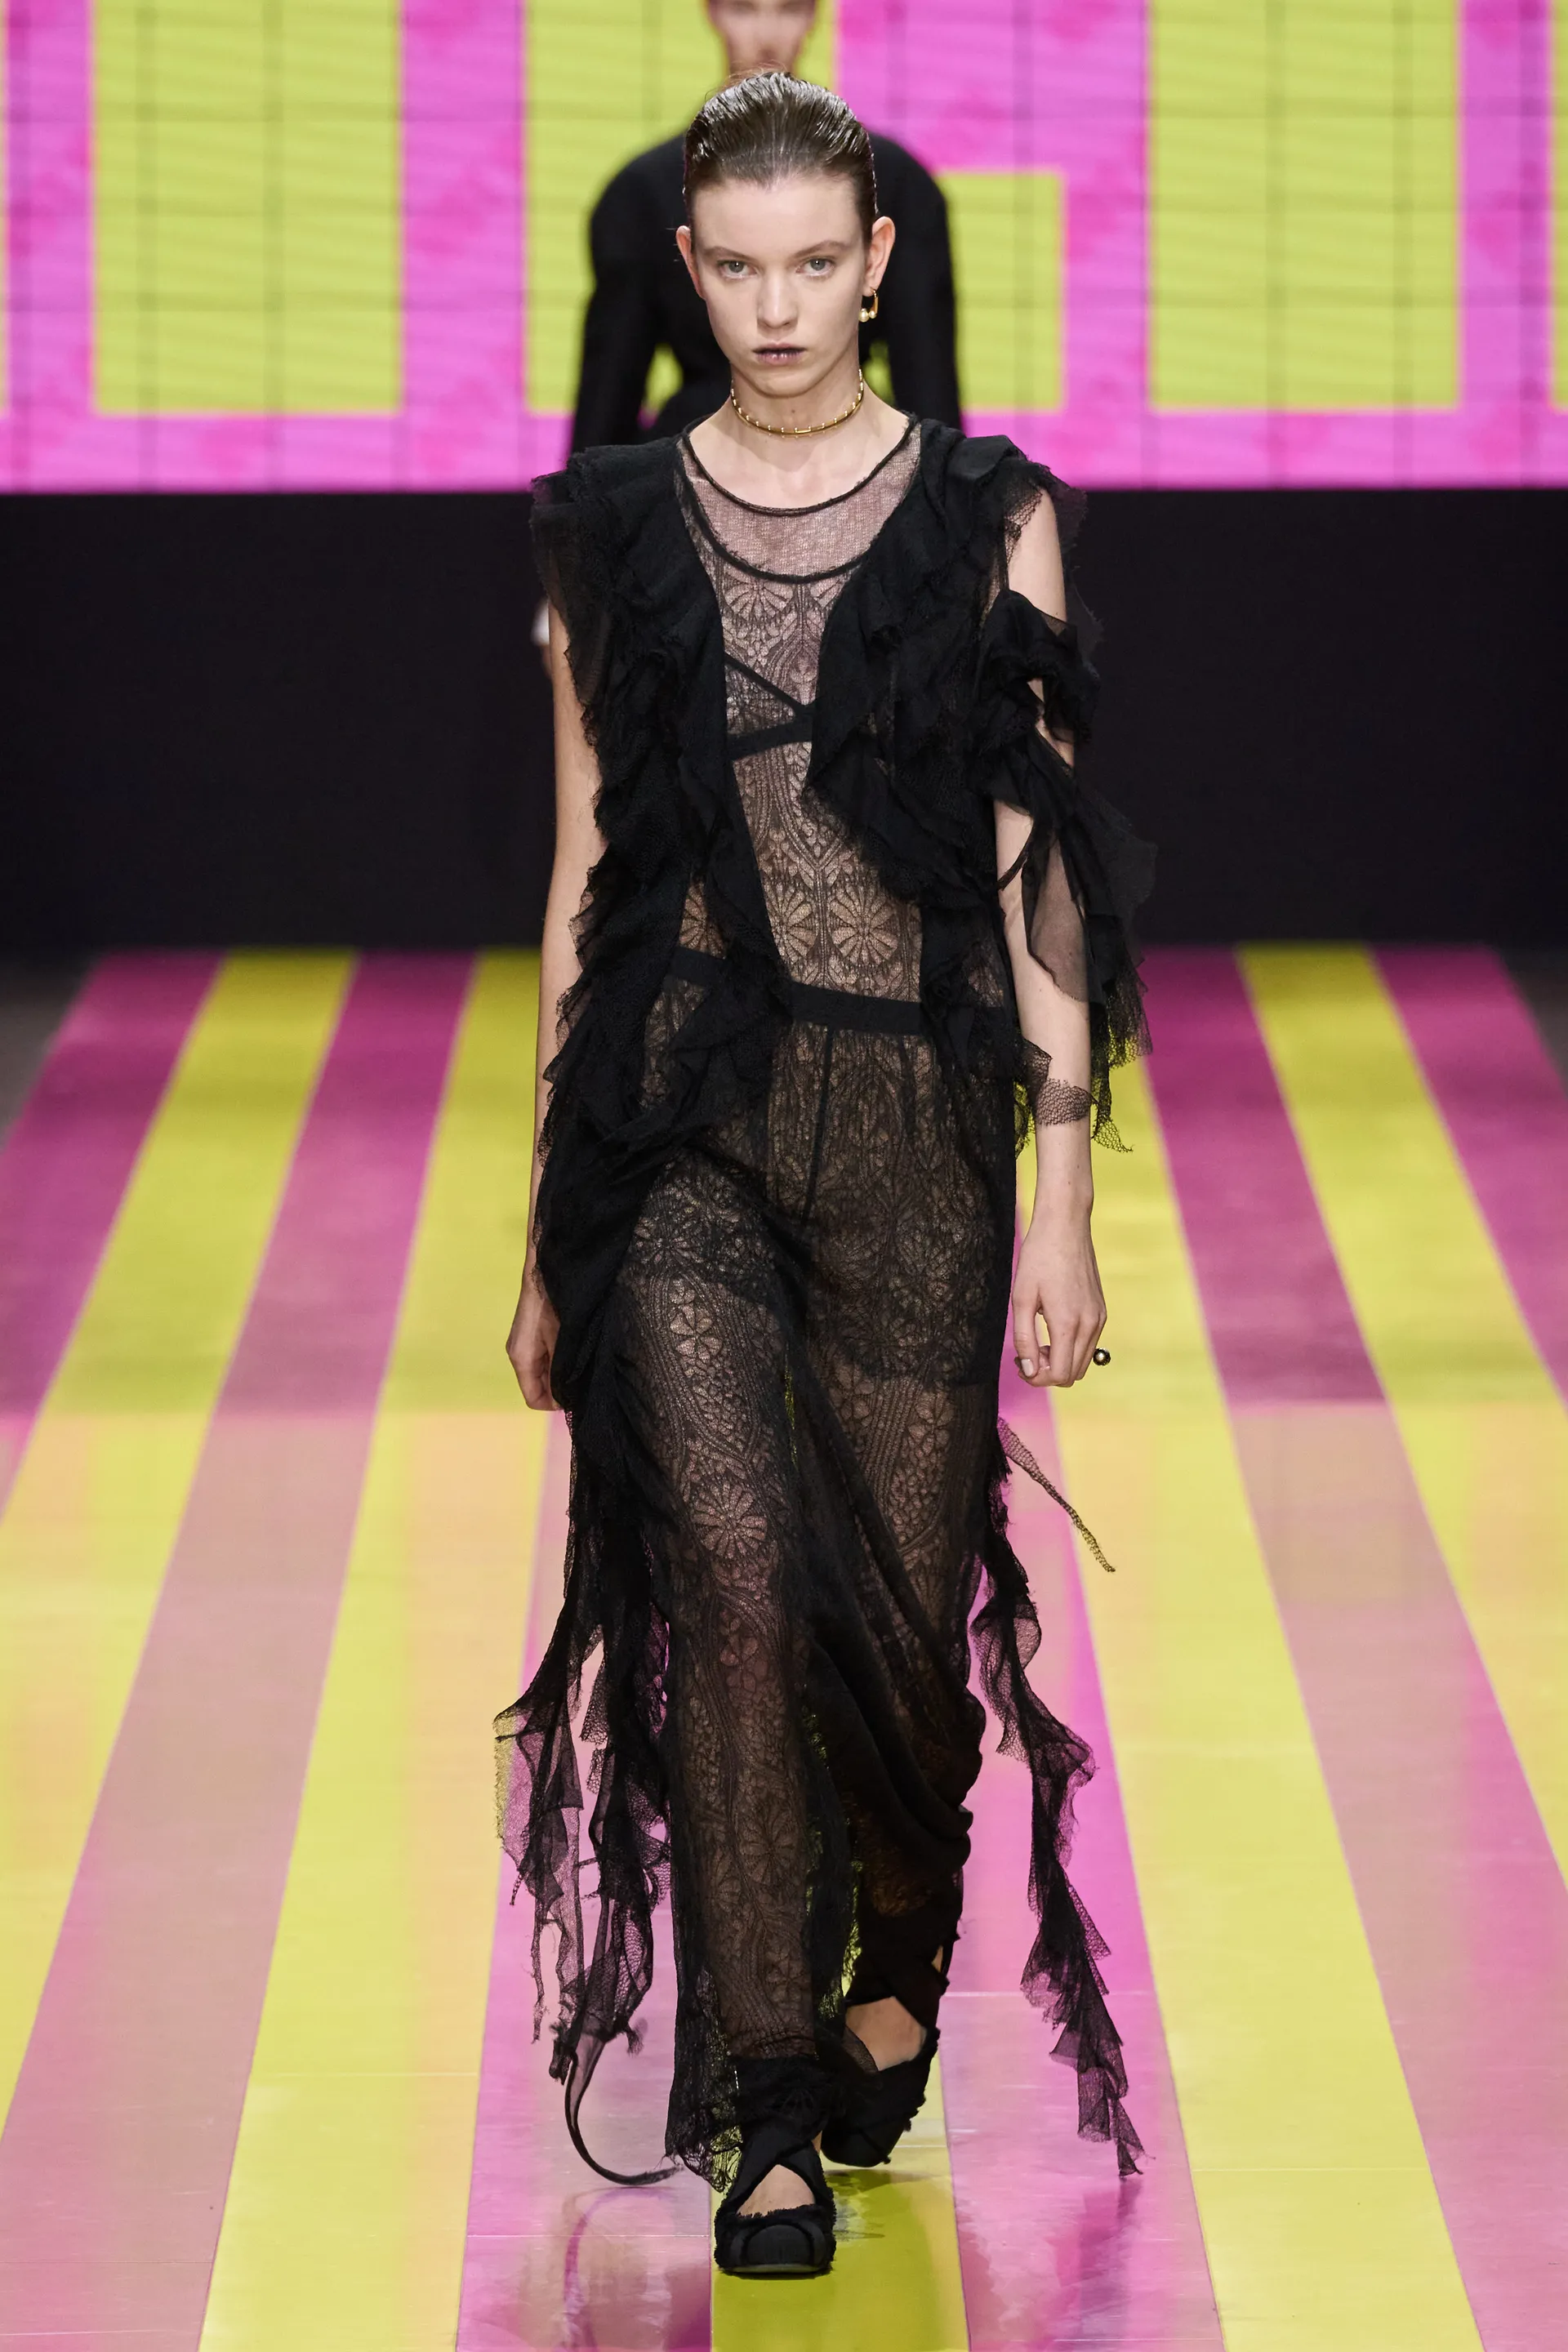 modelo - vestido de renda - lingerie - primavera verão - paris fashion week - https://stealthelook.com.br